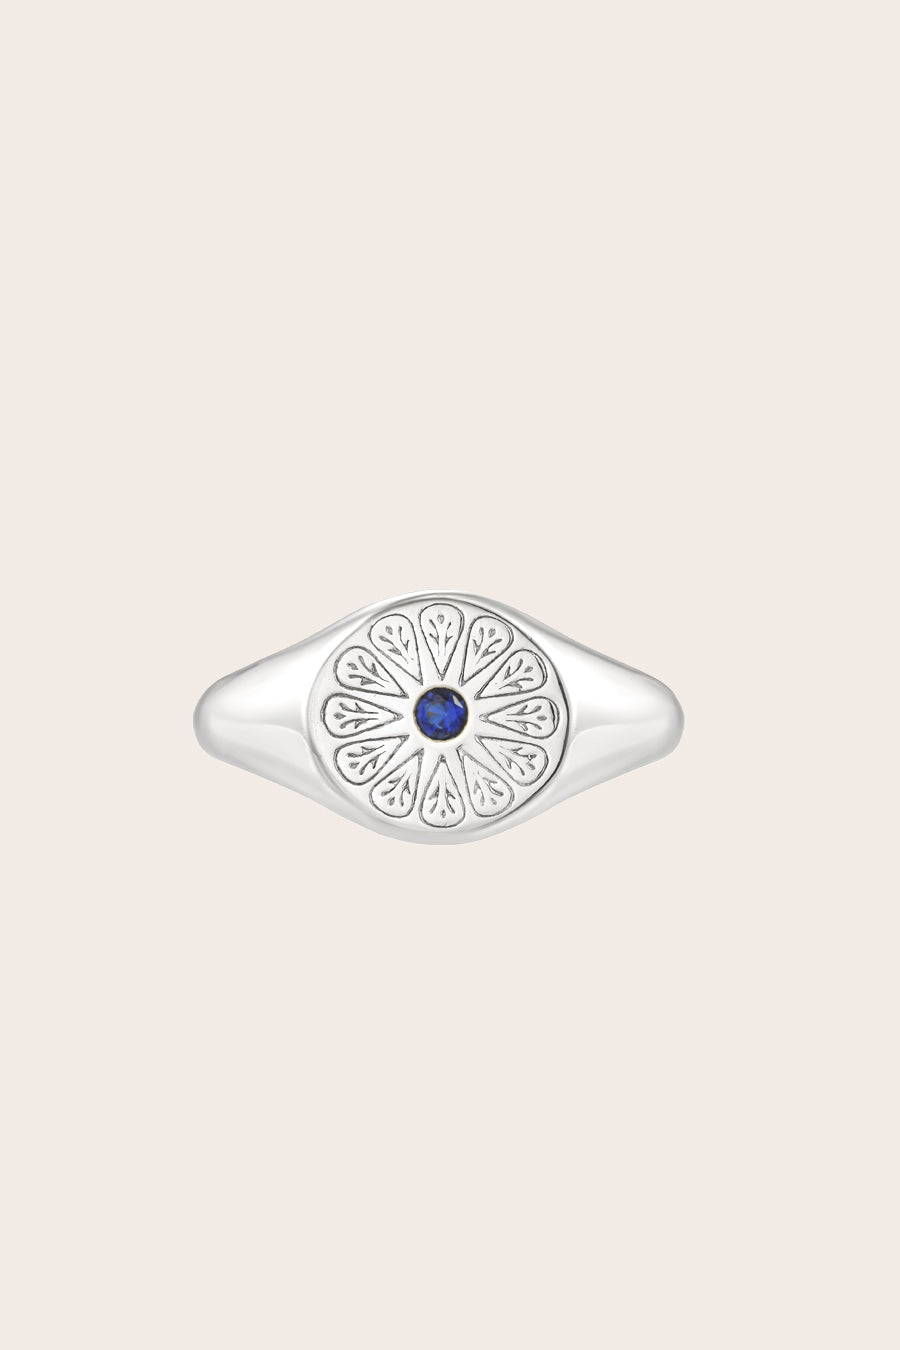 Silver Sapphire Birthstone Signet Birthstone Ring on cream background